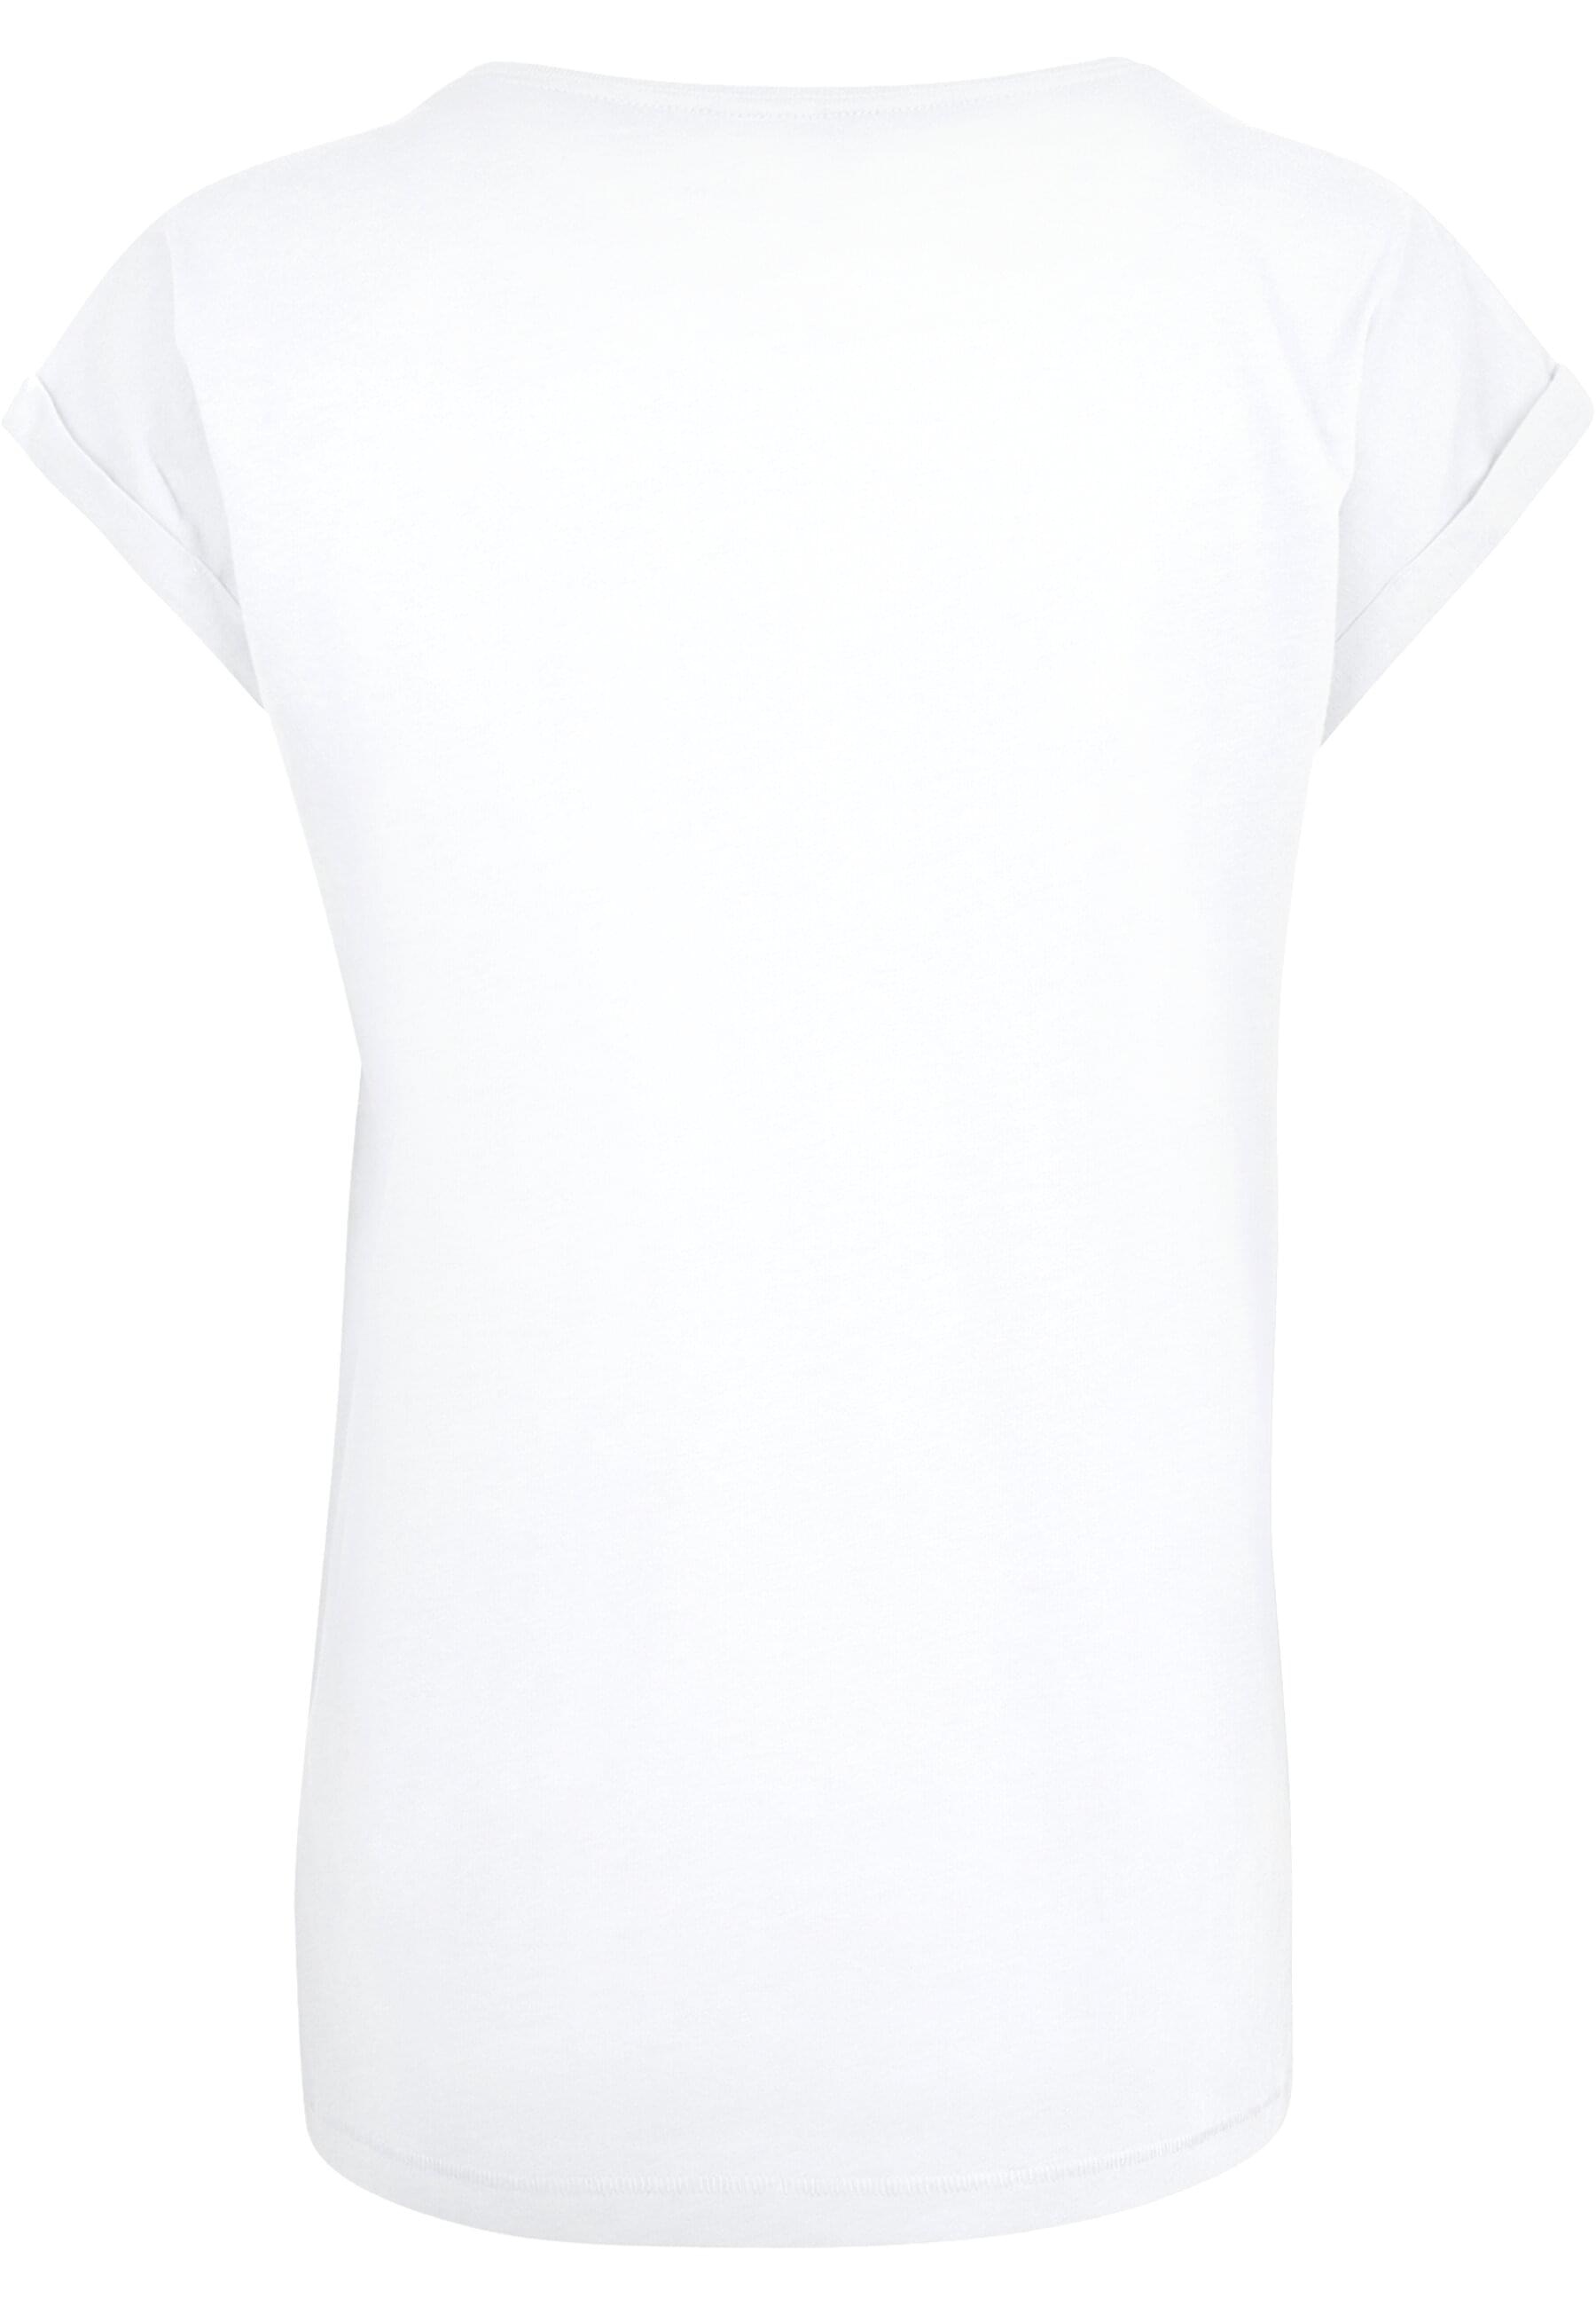 Edition | bestellen »Damen Merchcode (1 Layla BAUR Limited T-Shirt«, tlg.) - T-Shirt Ladies